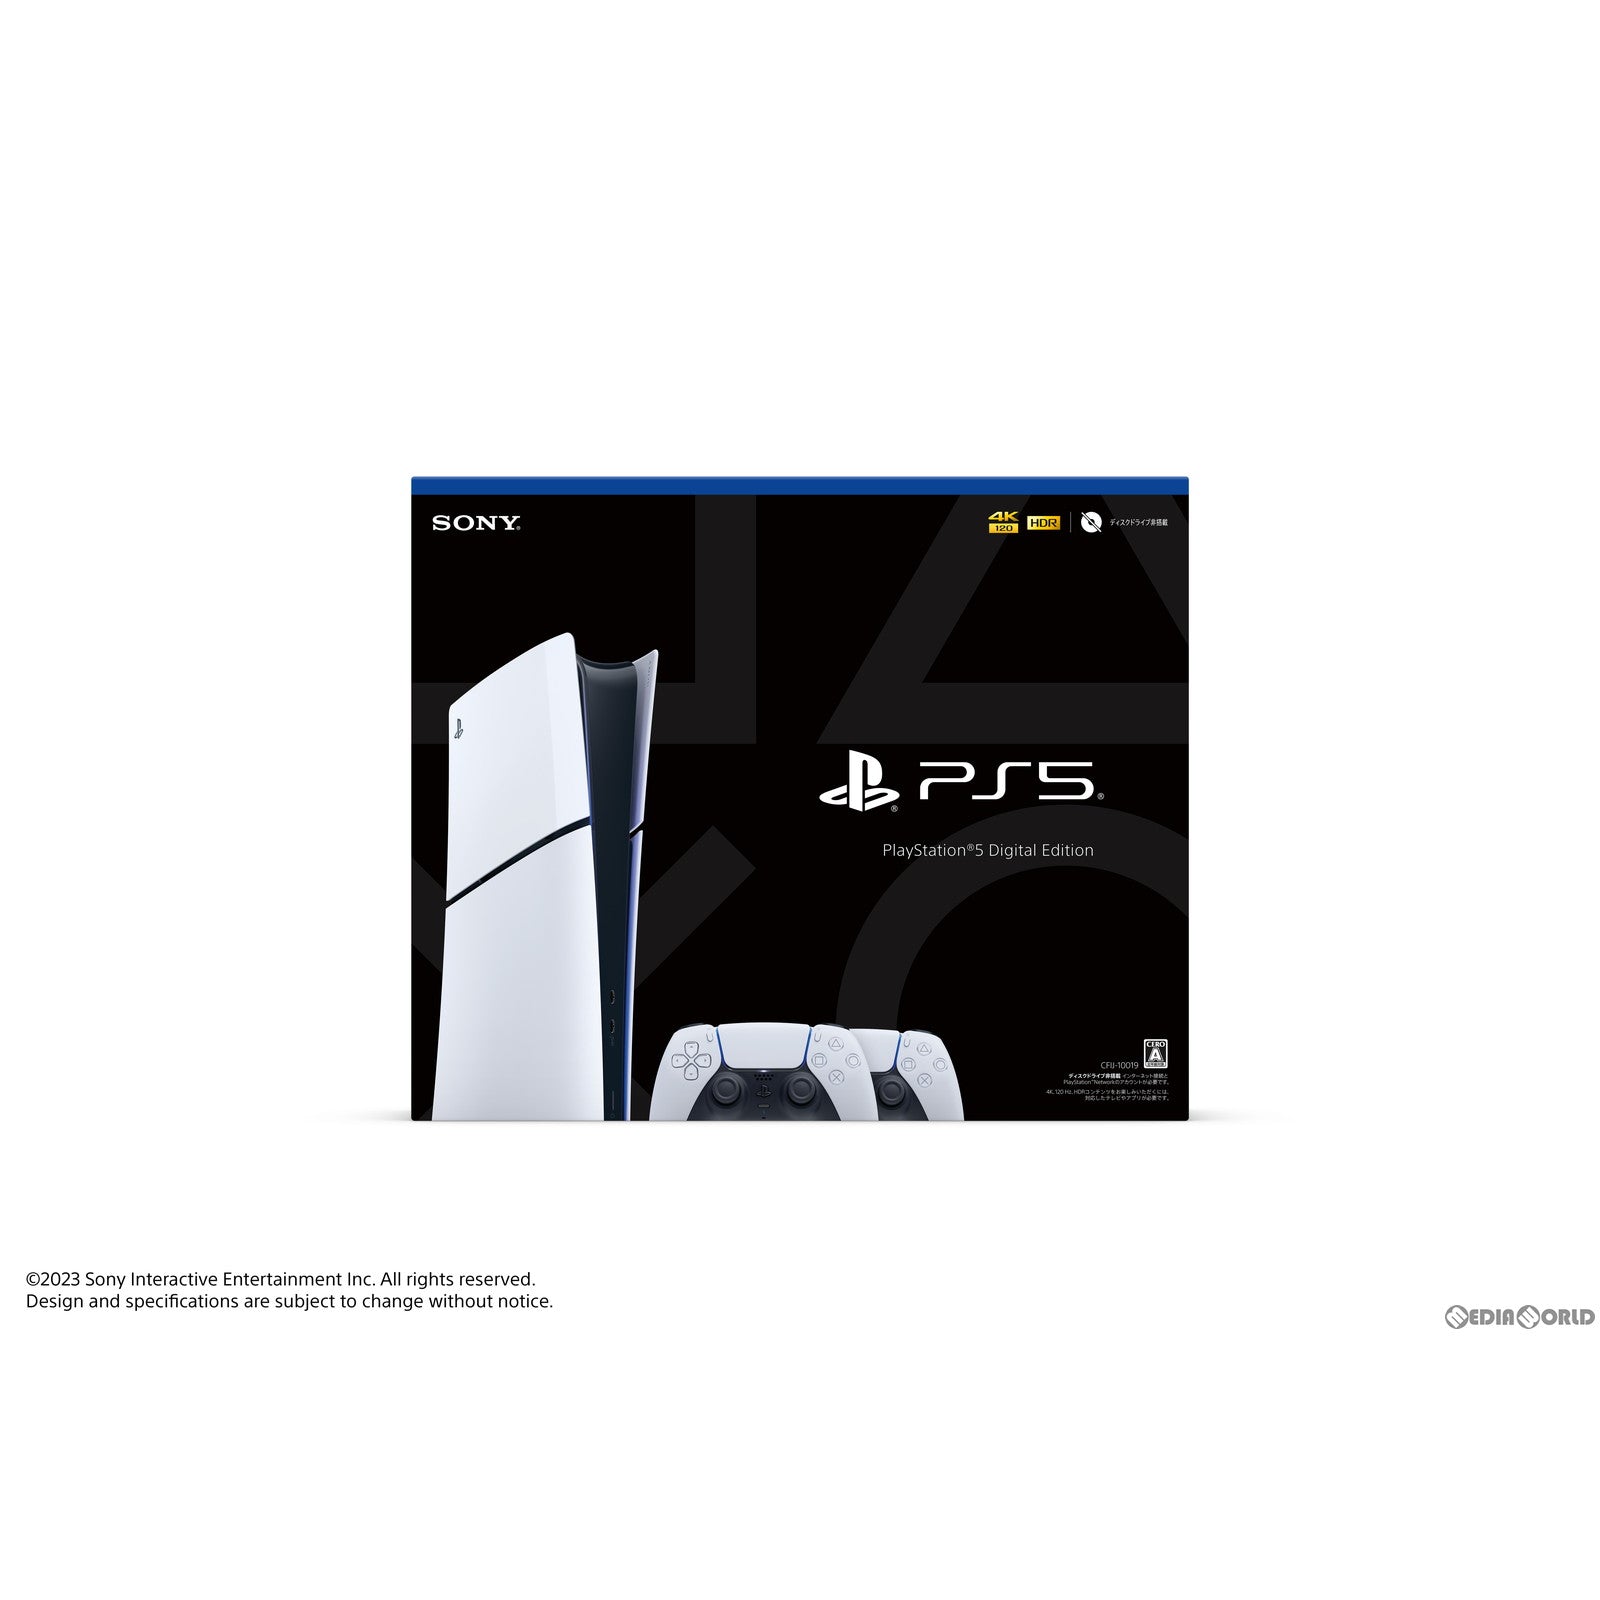 【新品即納】[本体][PS5]PlayStation5(プレイステーション5) slimモデル(スリムモデル) デジタル・エディション DualSense(デュアルセンス) ワイヤレスコントローラー ダブルパック(CFIJ-10019)(20231110)